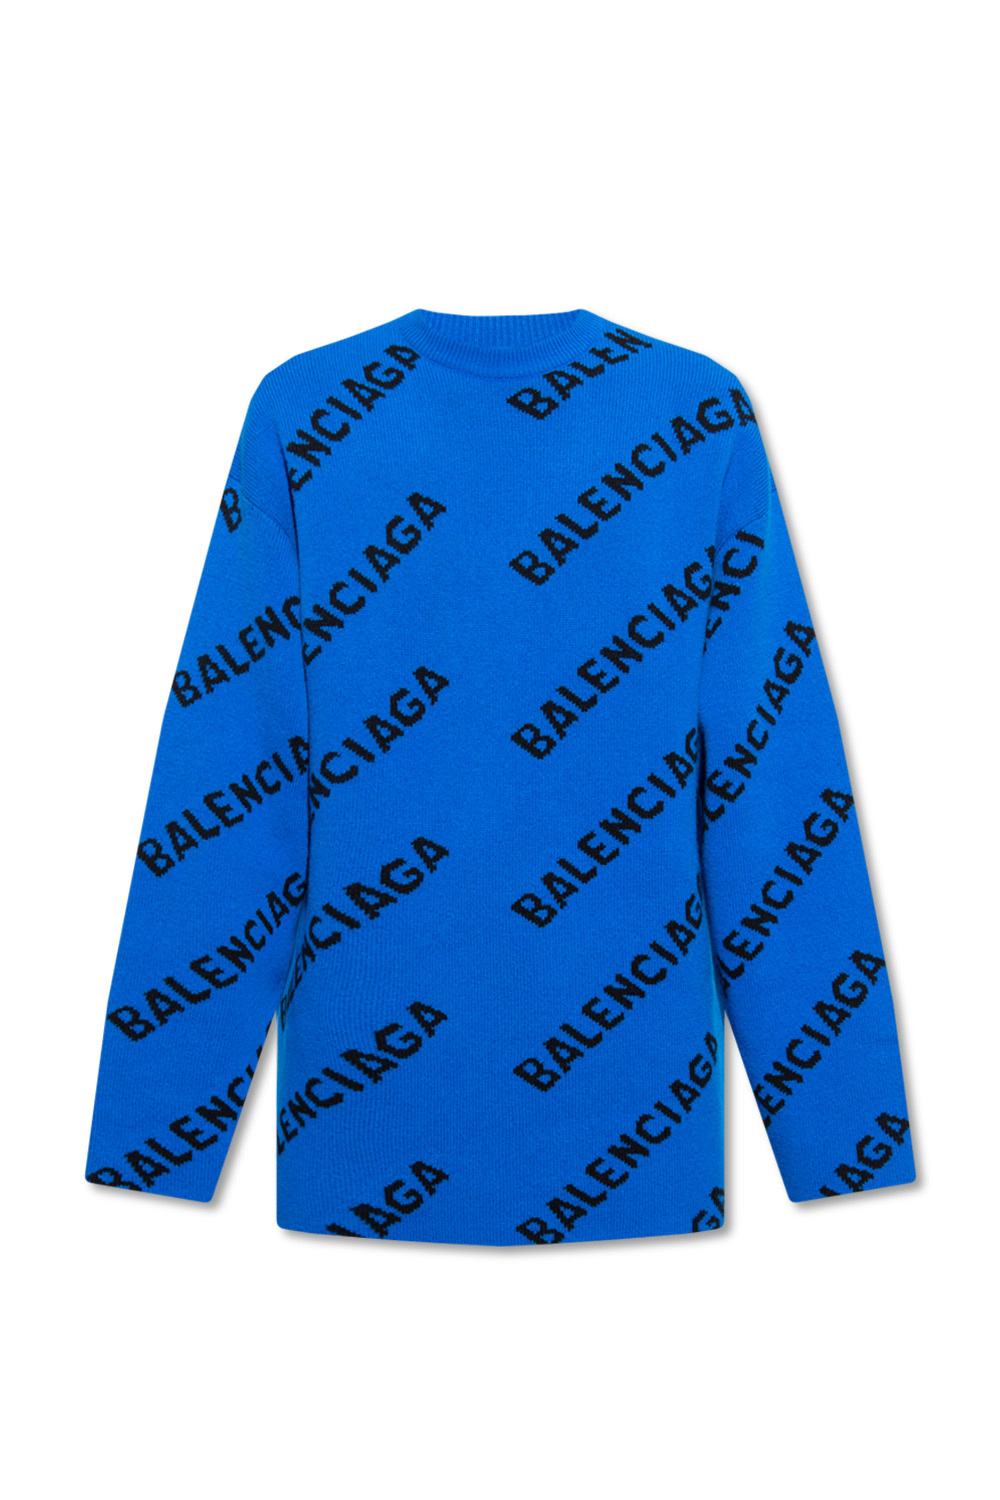 Balenciaga edge sweater with logo